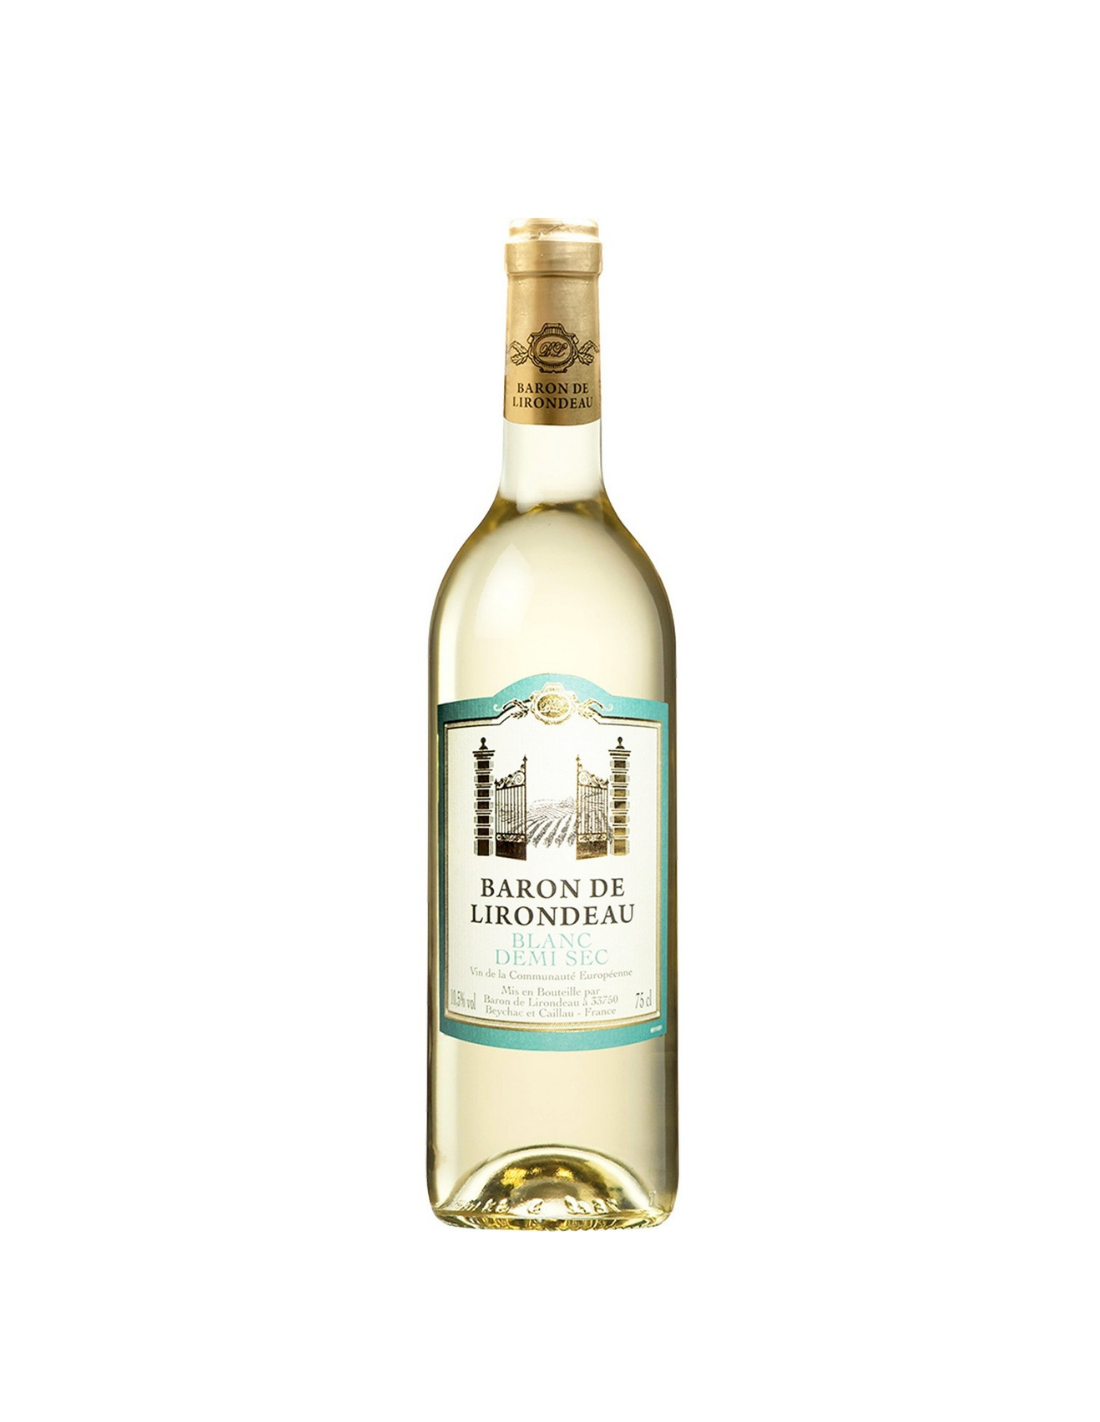 Vin alb demidulce, Baron de Lirondeau Coteaux de Béziers, 0.75L, 10.5% alc., Franta alcooldiscount.ro